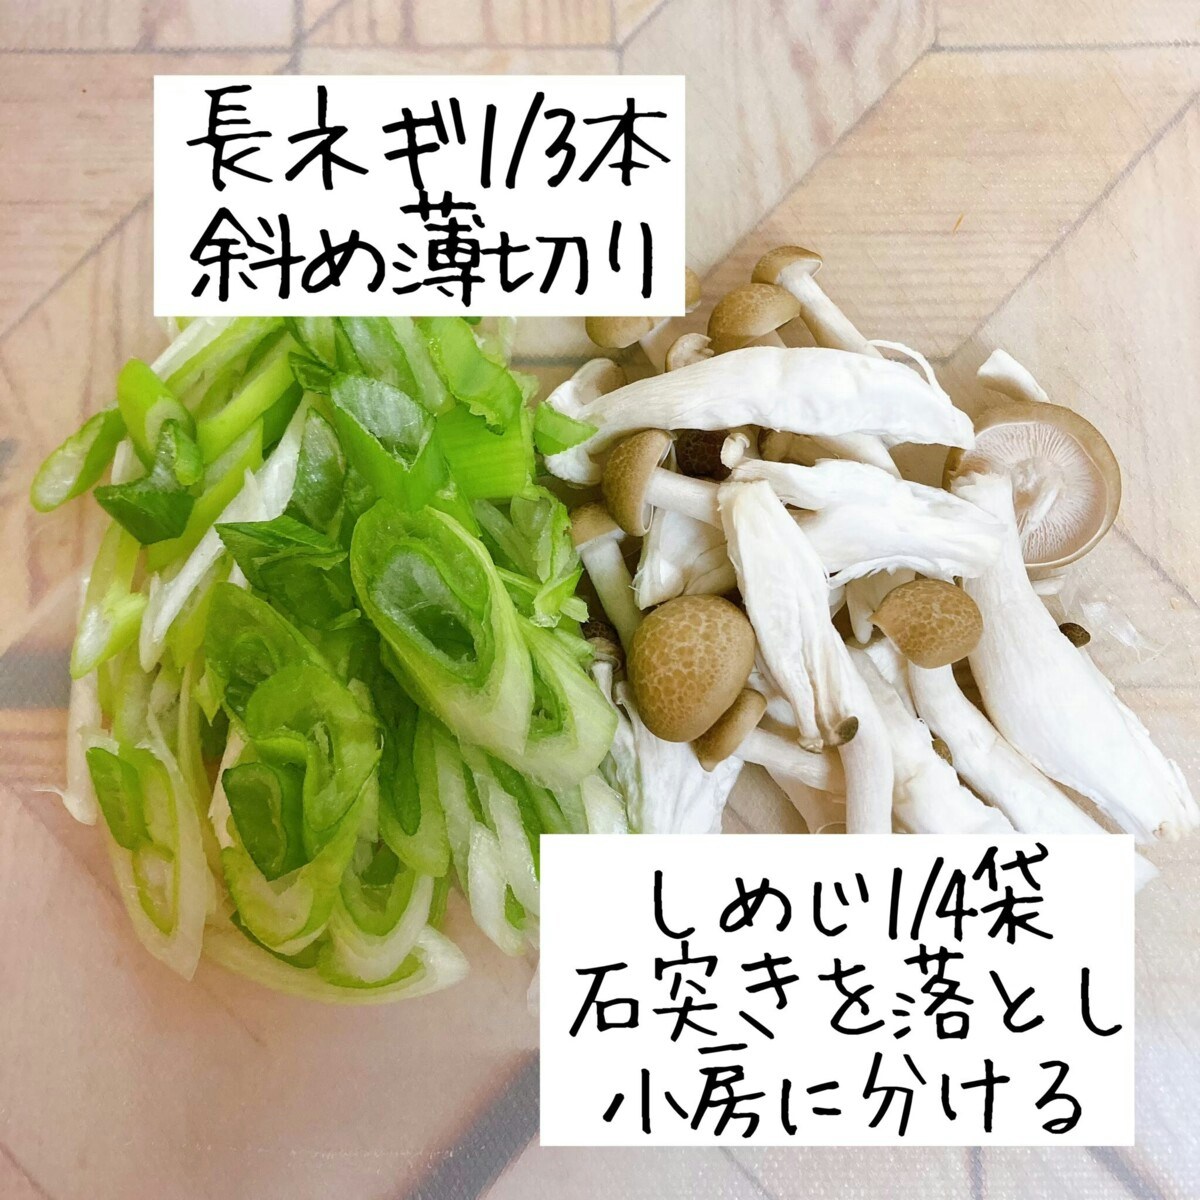 あんかけ豆腐のレシピです。